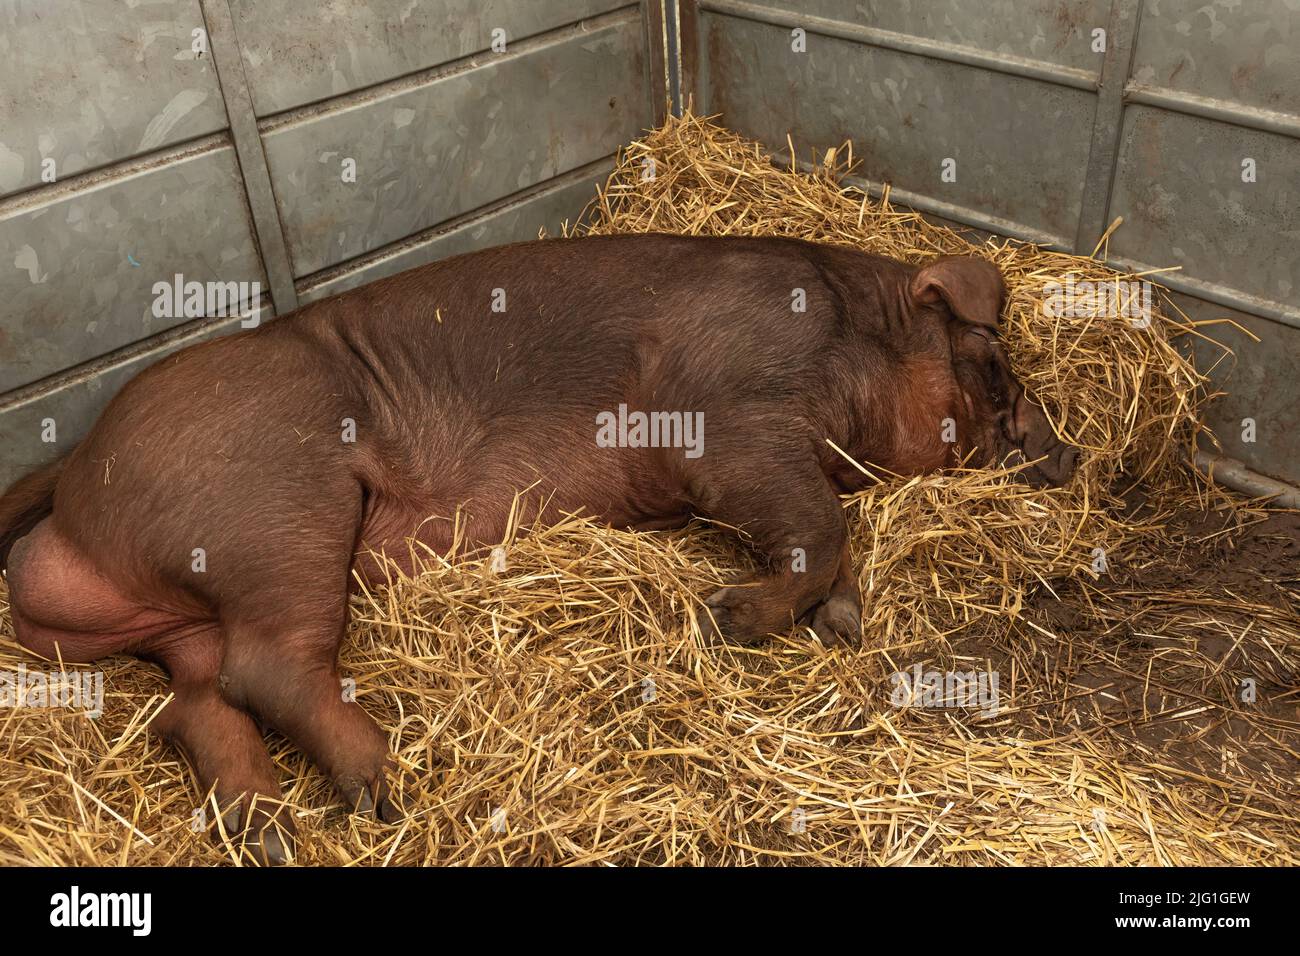 Großes, haariges Ingwerschwein schläft in einem Stift auf frischem Stroh Stockfoto